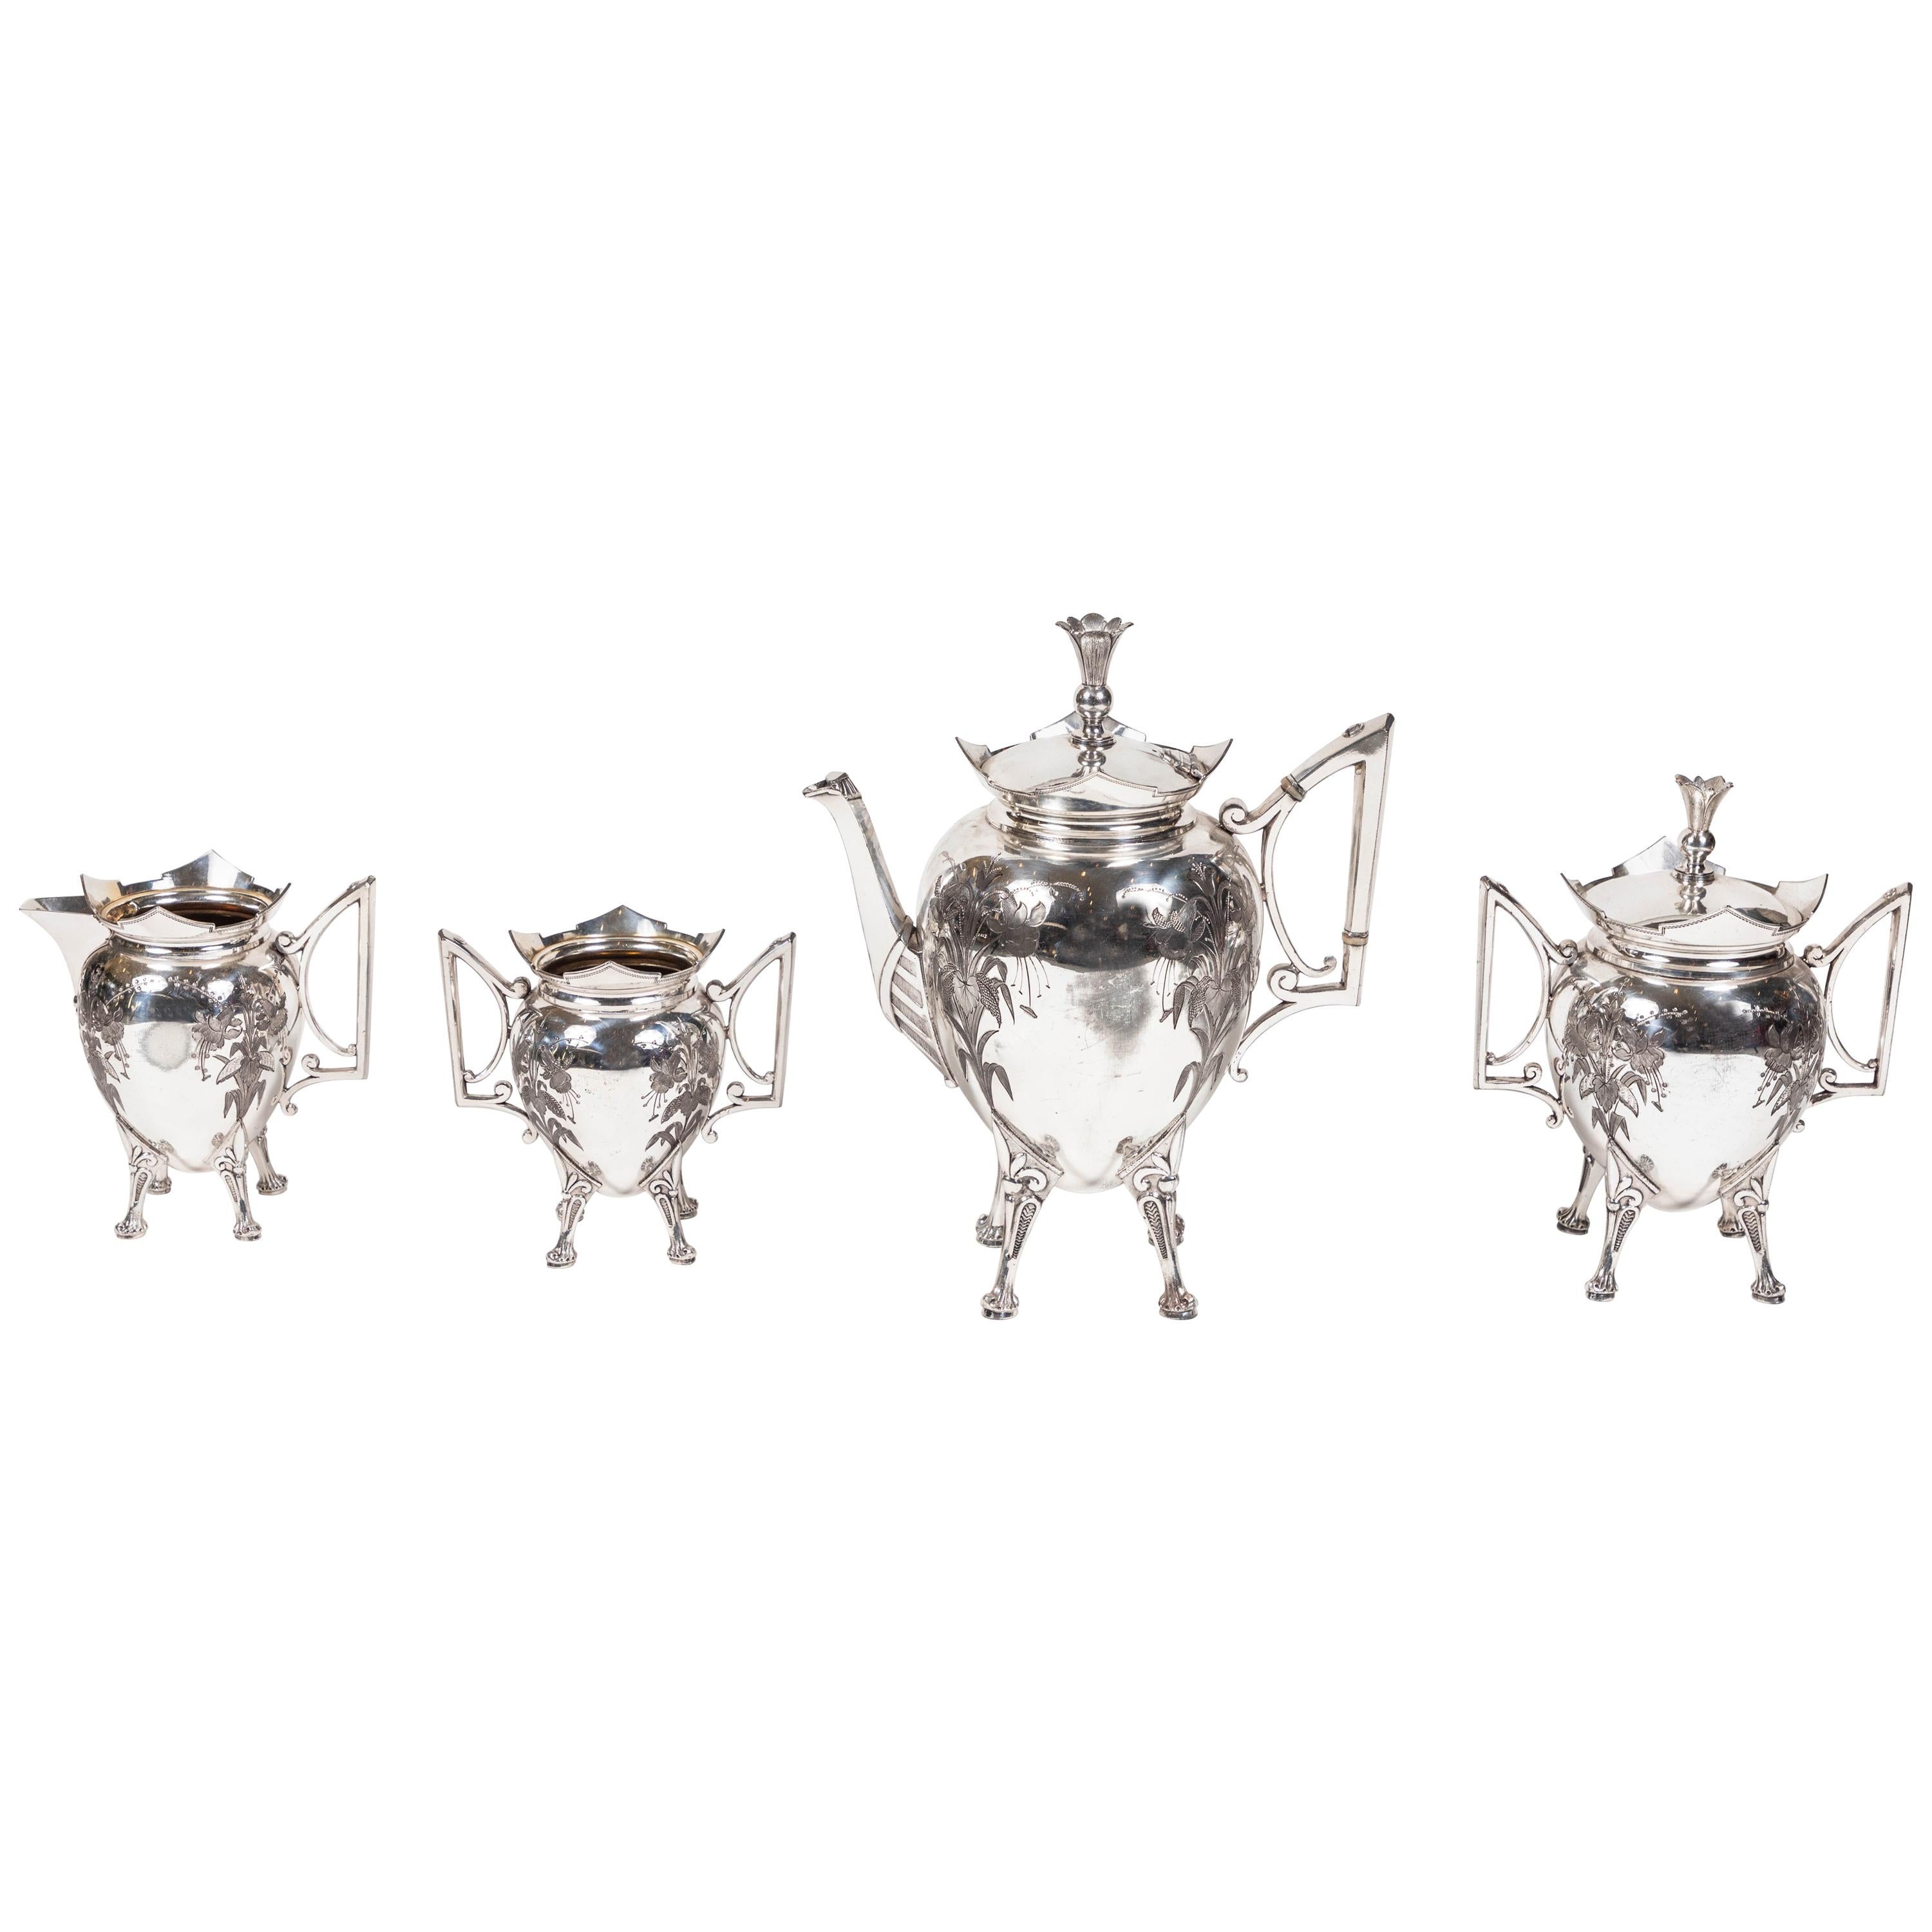 Meriden Britannia Company Victorian Silver Plate Coffee Set